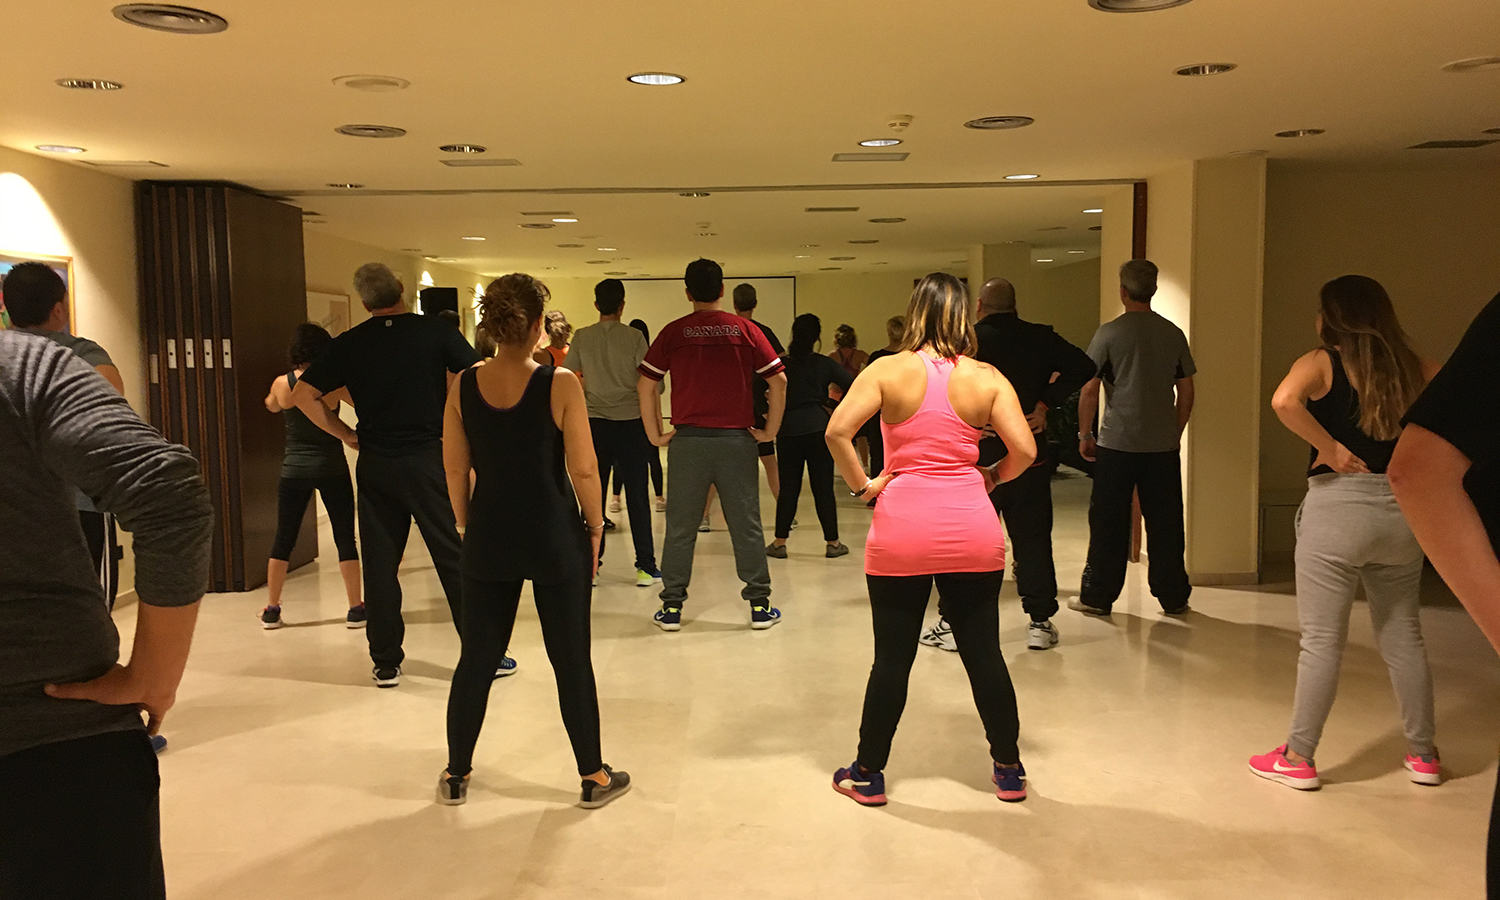 Algunos de los participantes a la sesión de Tai Chi Kung realizando un ejercicio durante la Convención 2018 de Conversia